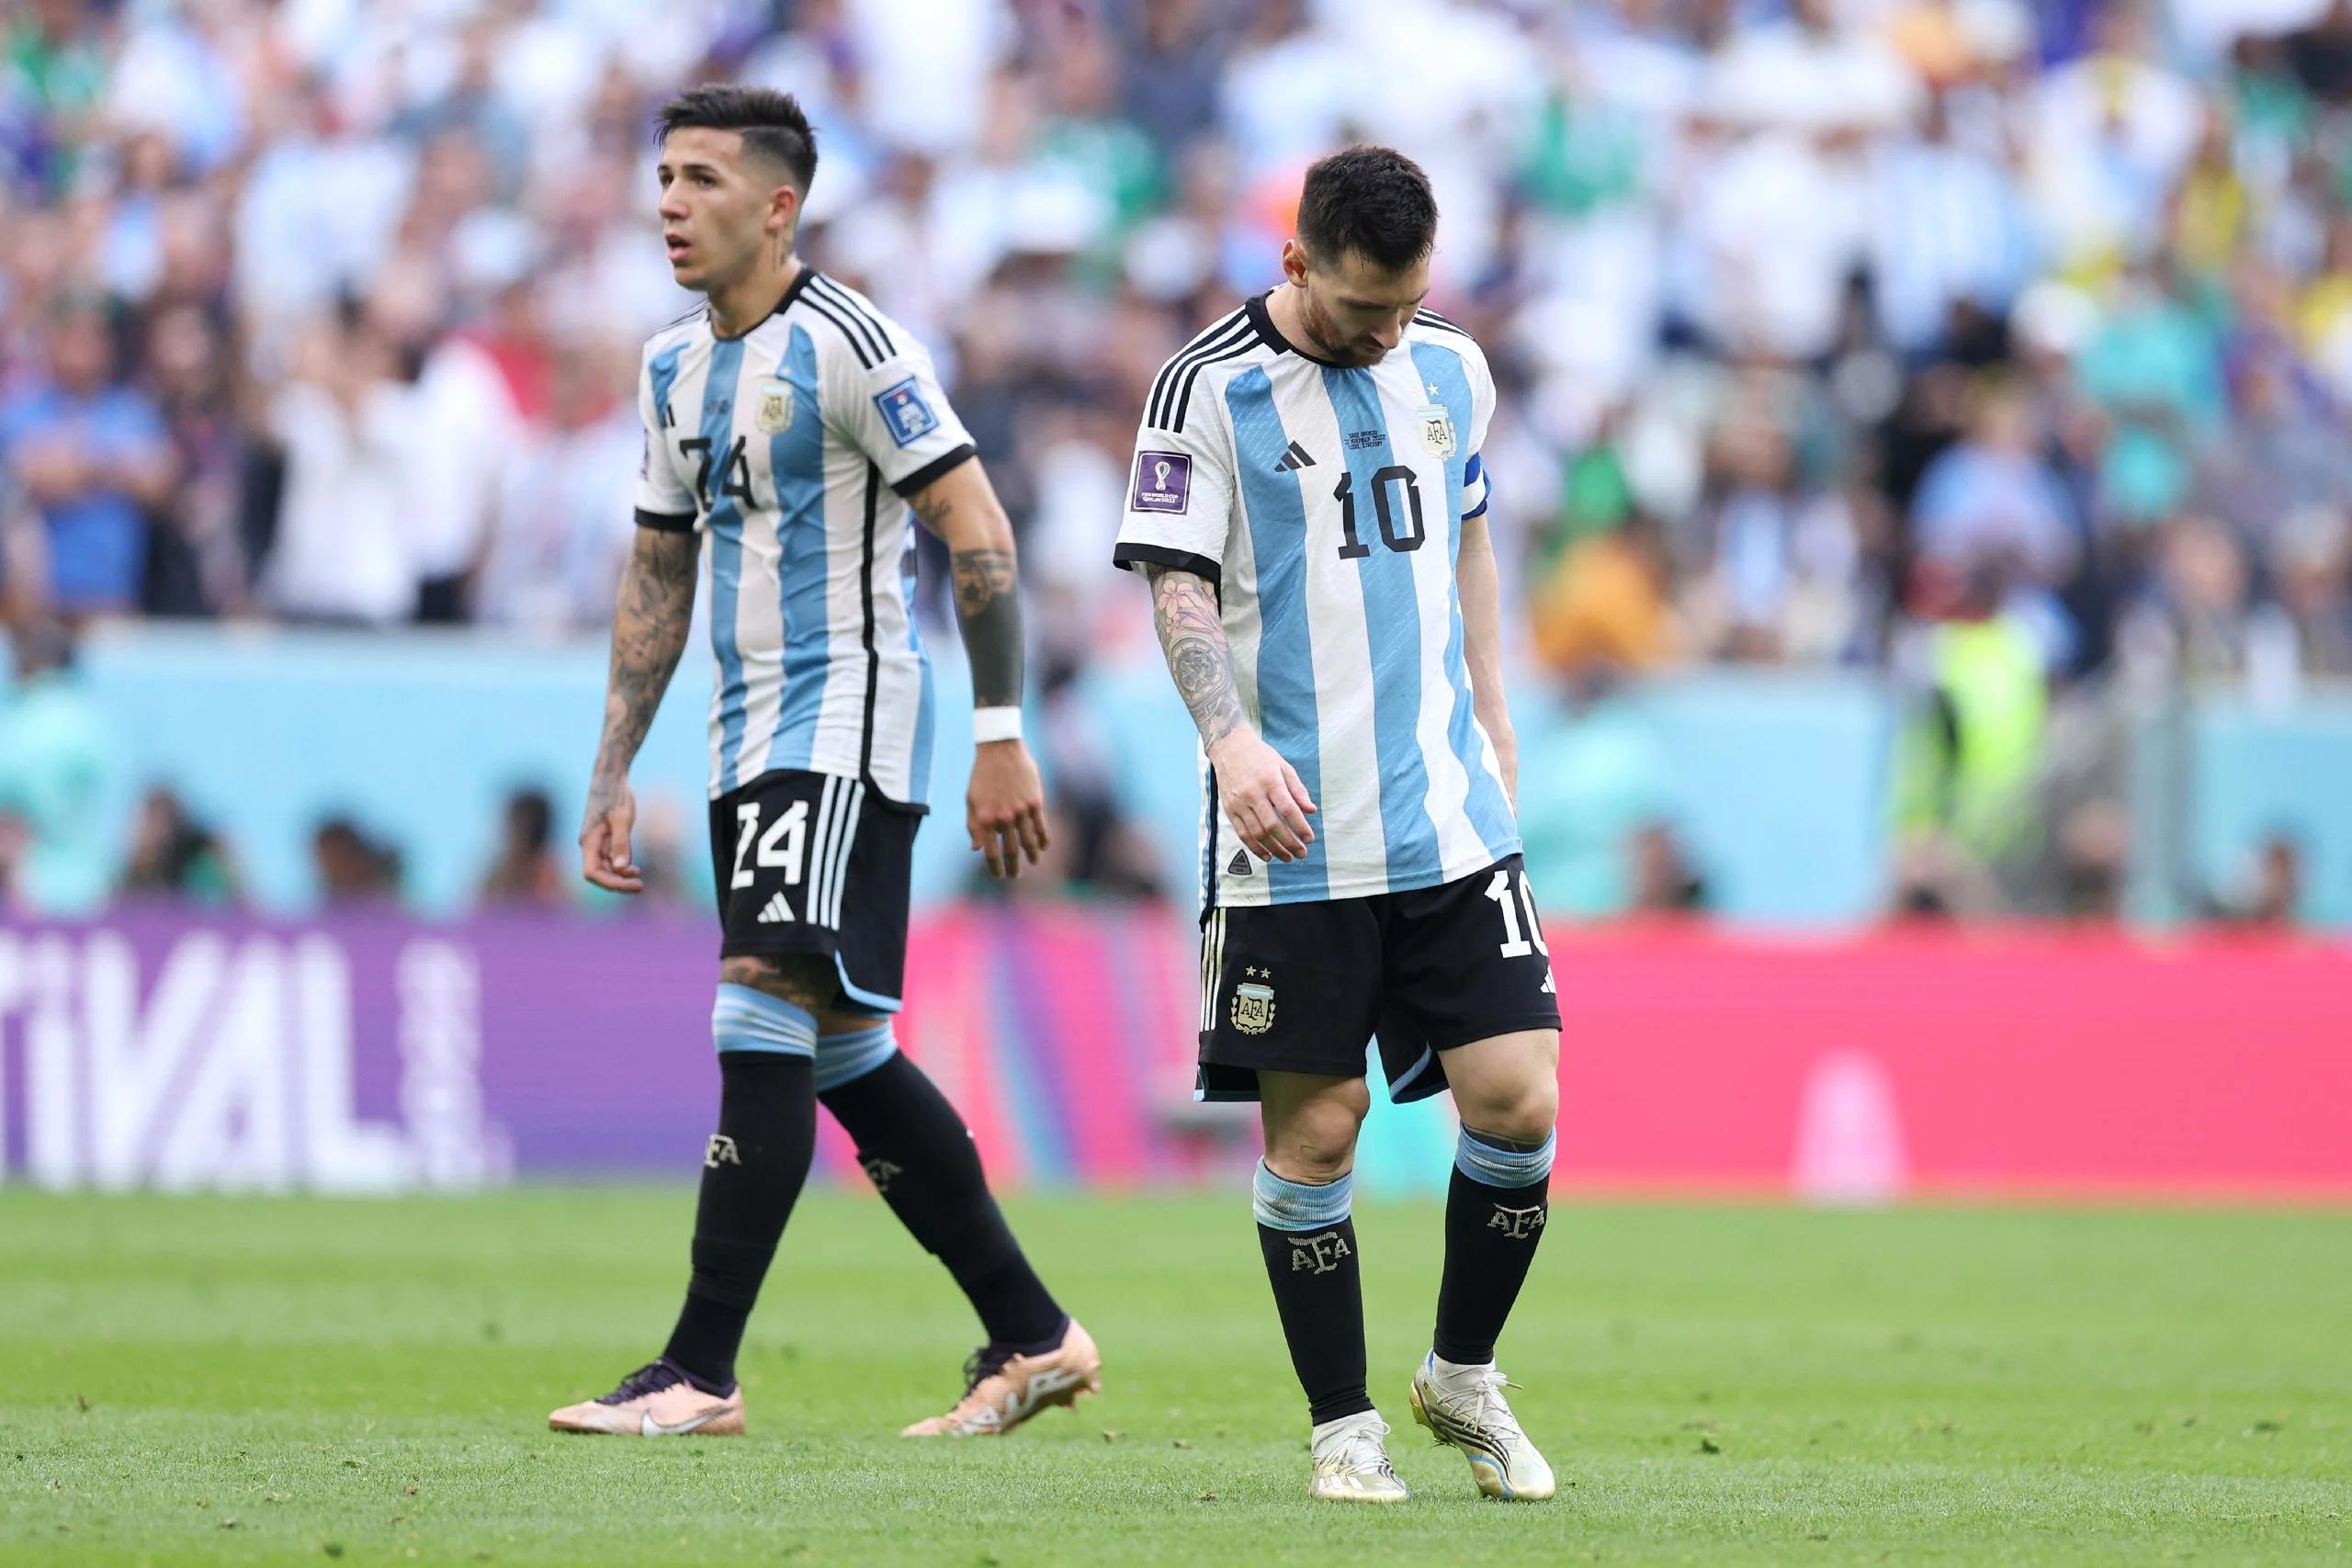 توقيت مباراة الأرجنتين وهولندا في كأس العالم فيفا قطر 2022